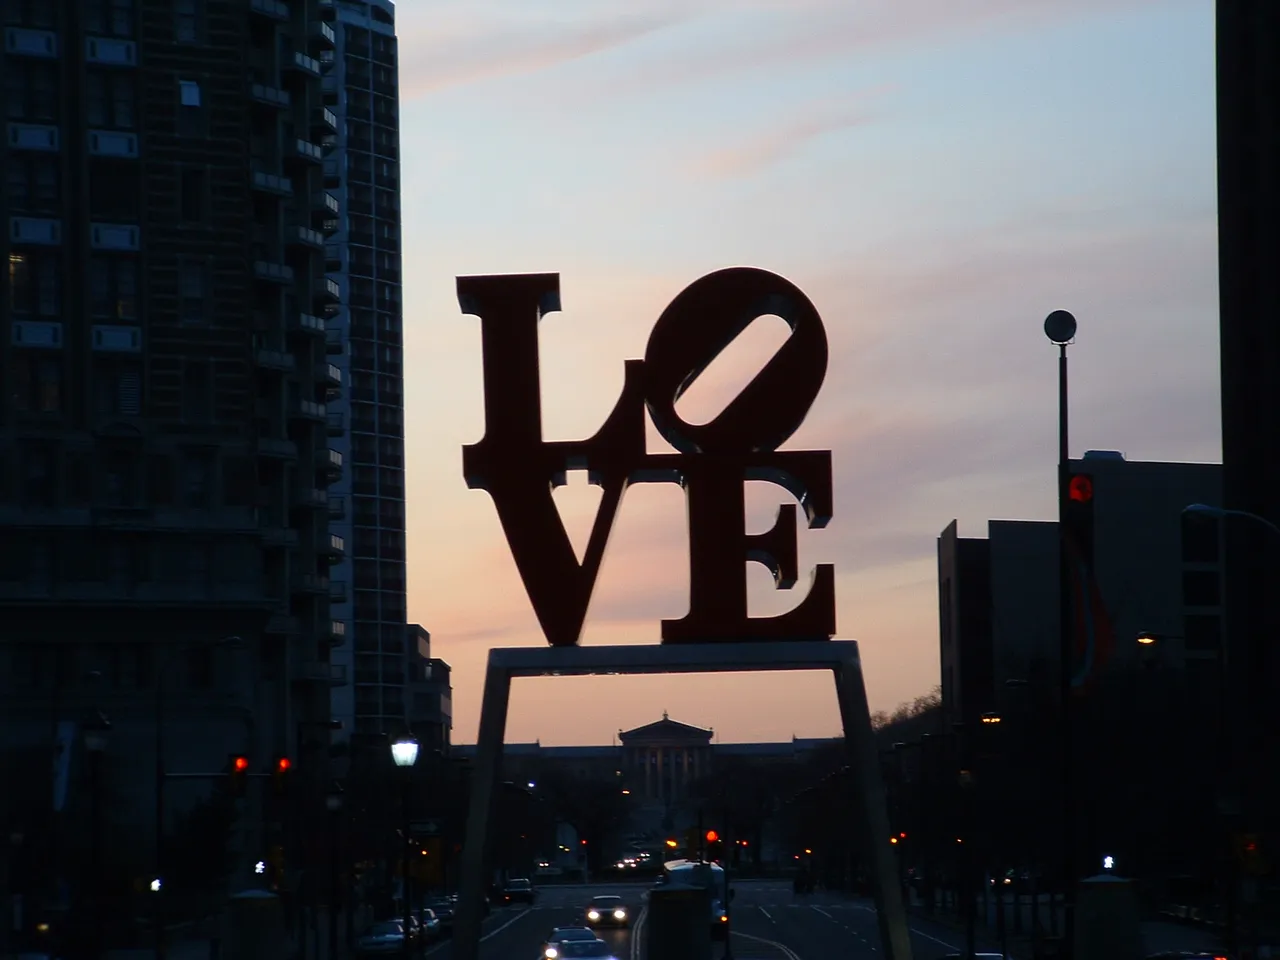 Robert Indiana's LOVE sculpture in Philadelphia